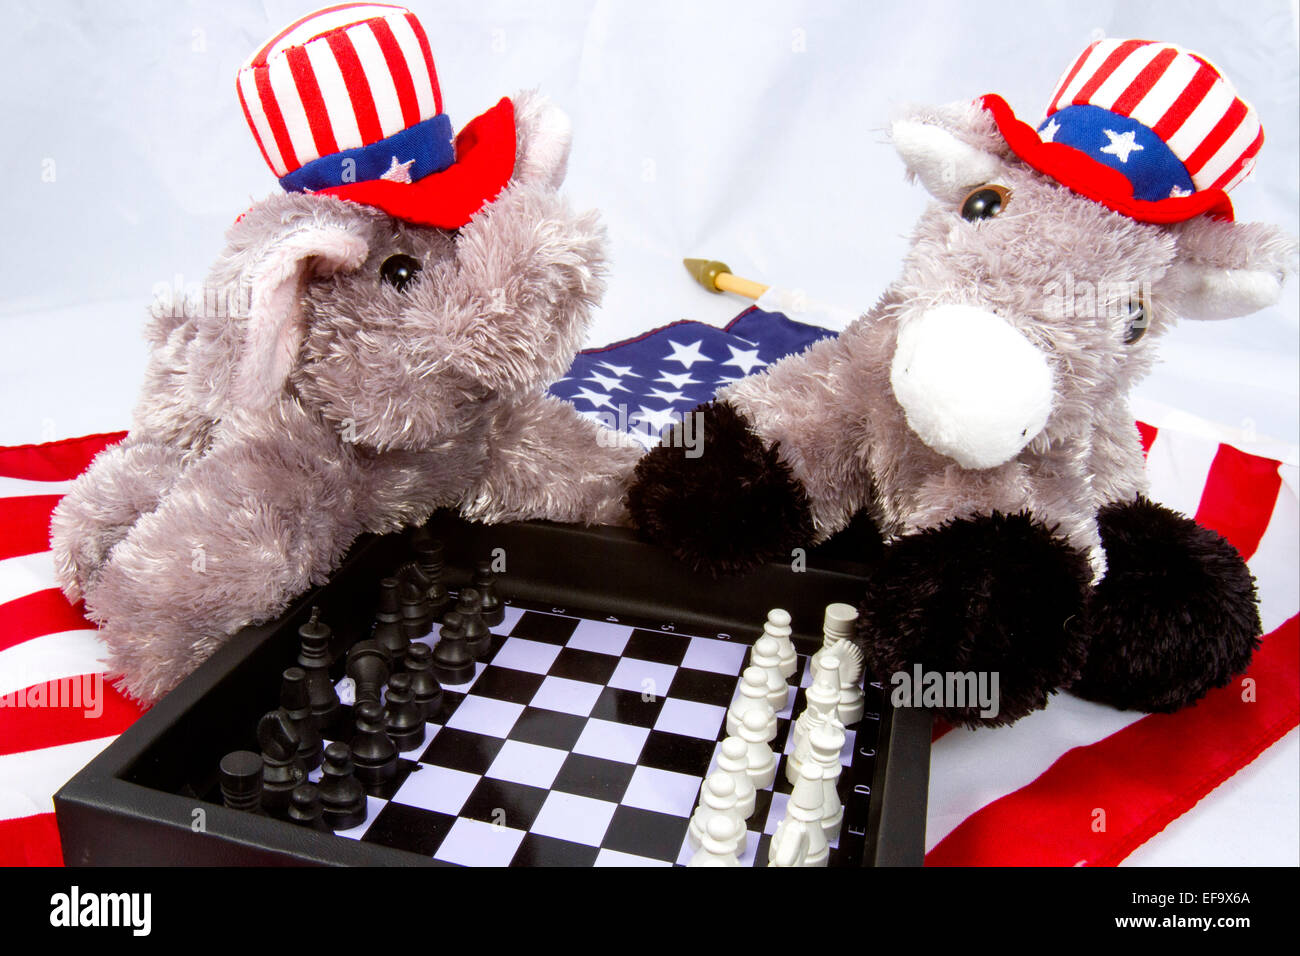 Republikanische Elefant und Demokrat Esel spielen Schach auf amerikanische Flagge Stockfoto